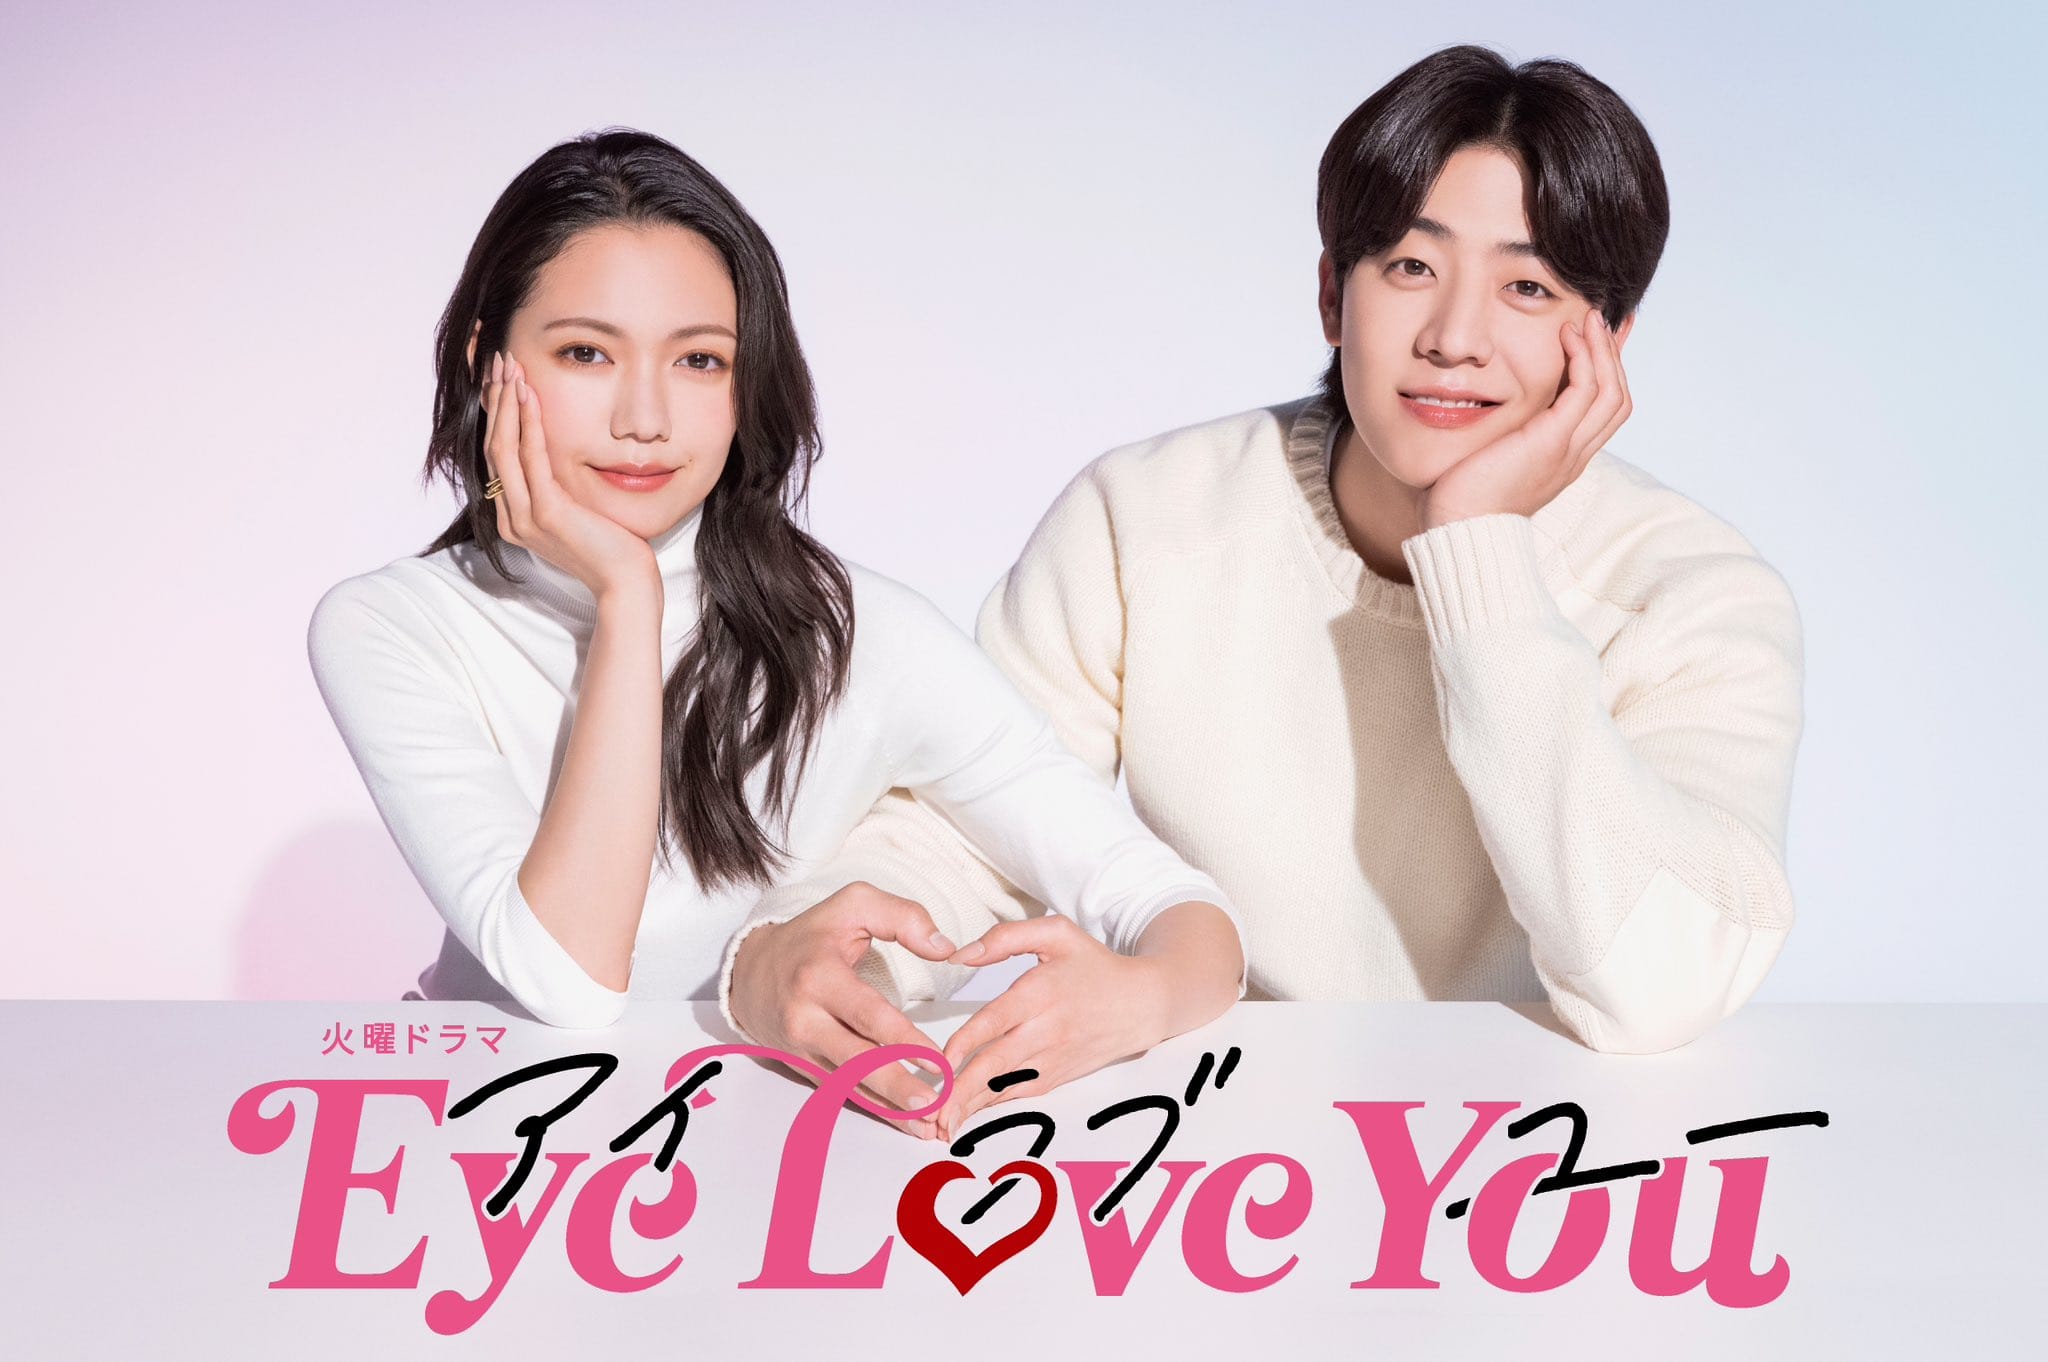 한국 배우 채종협이 일본 드라마 주연으로, 국경 초월 판타지 로맨스 드라마 'EYE LOVE YOU'